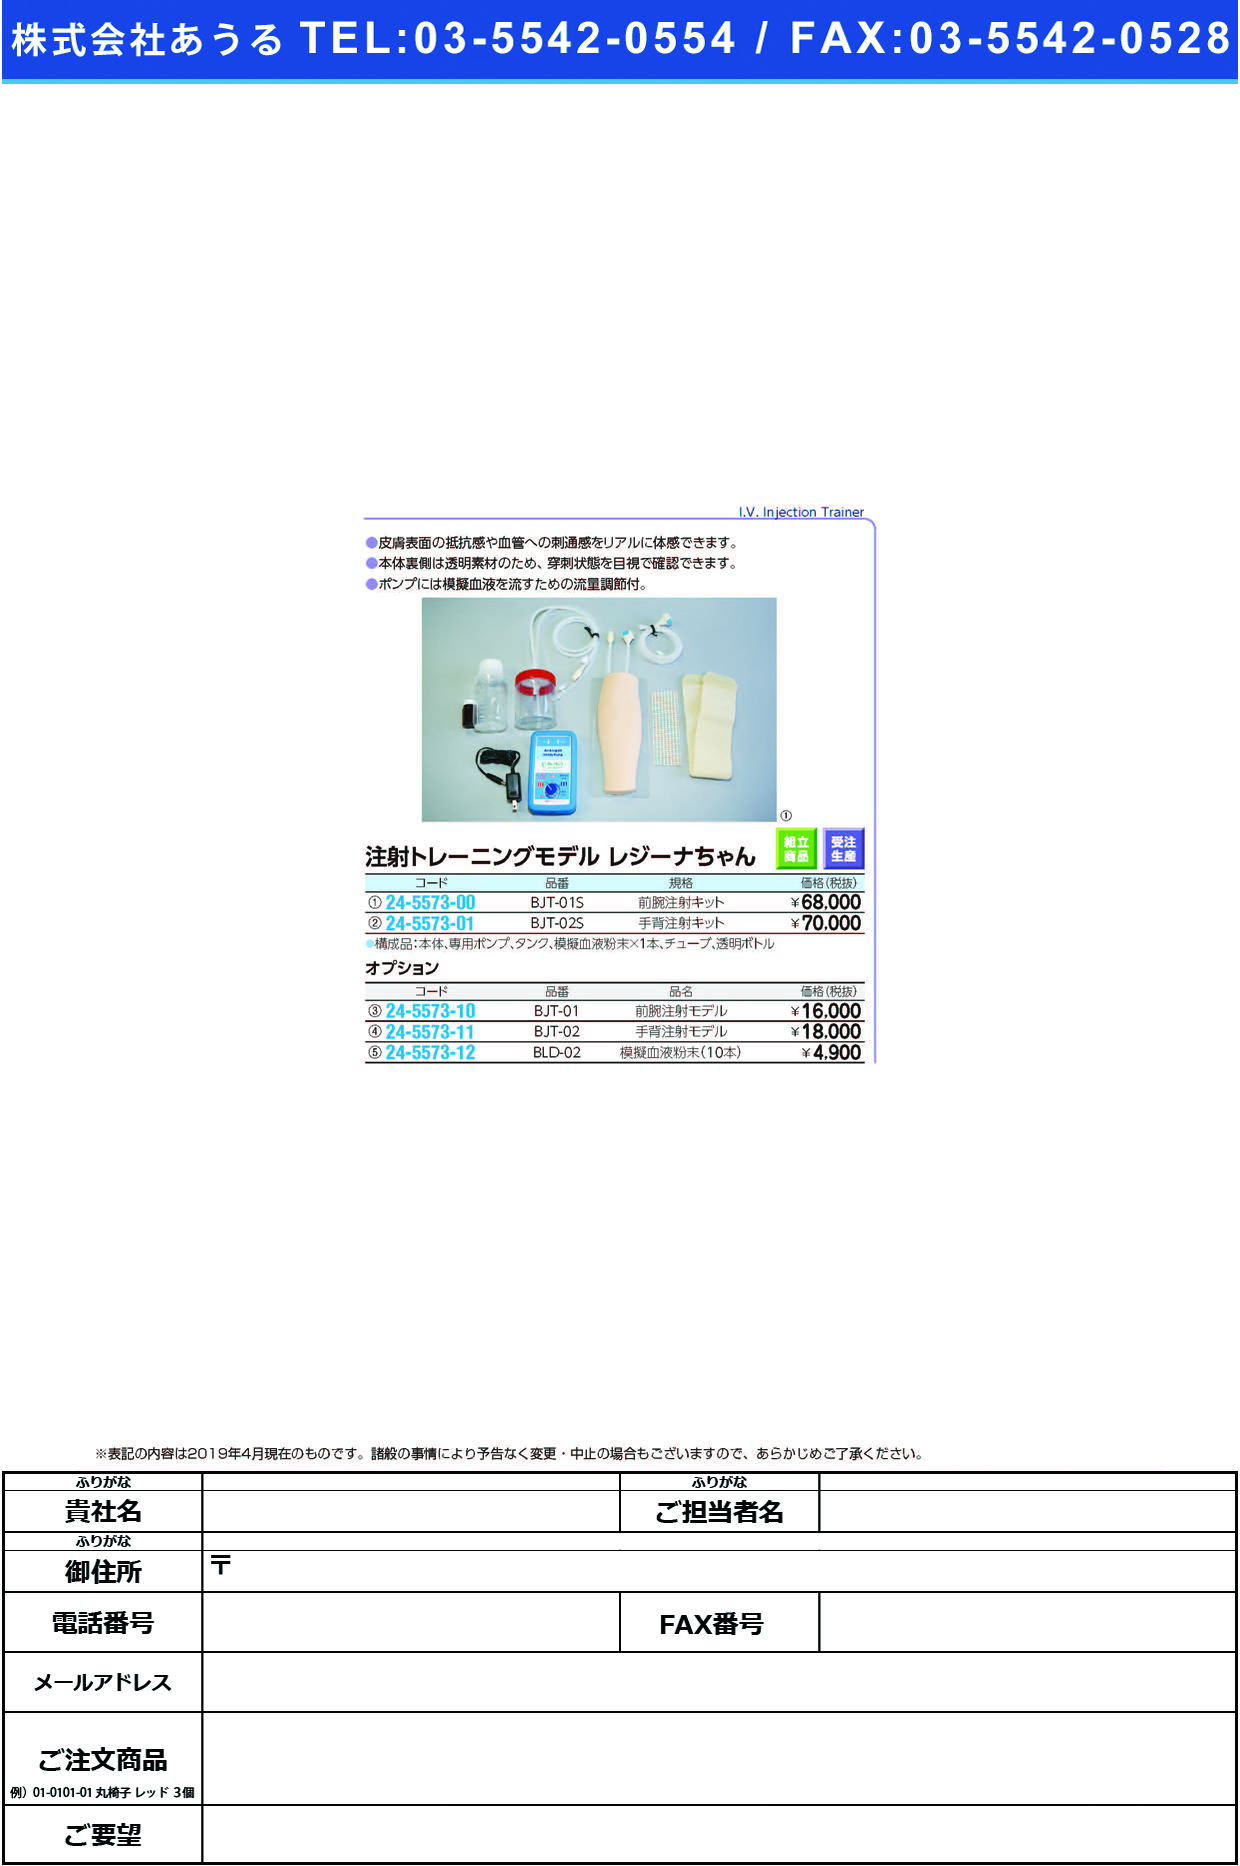 (24-5573-00)注射トレーニングモデルレジーナちゃん BJT-01S(ｾﾞﾝﾜﾝﾁｭｳｼｬ) ﾁｭｳｼｬﾄﾚｰﾆﾝｸﾞﾓﾃﾞﾙ【1組単位】【2019年カタログ商品】